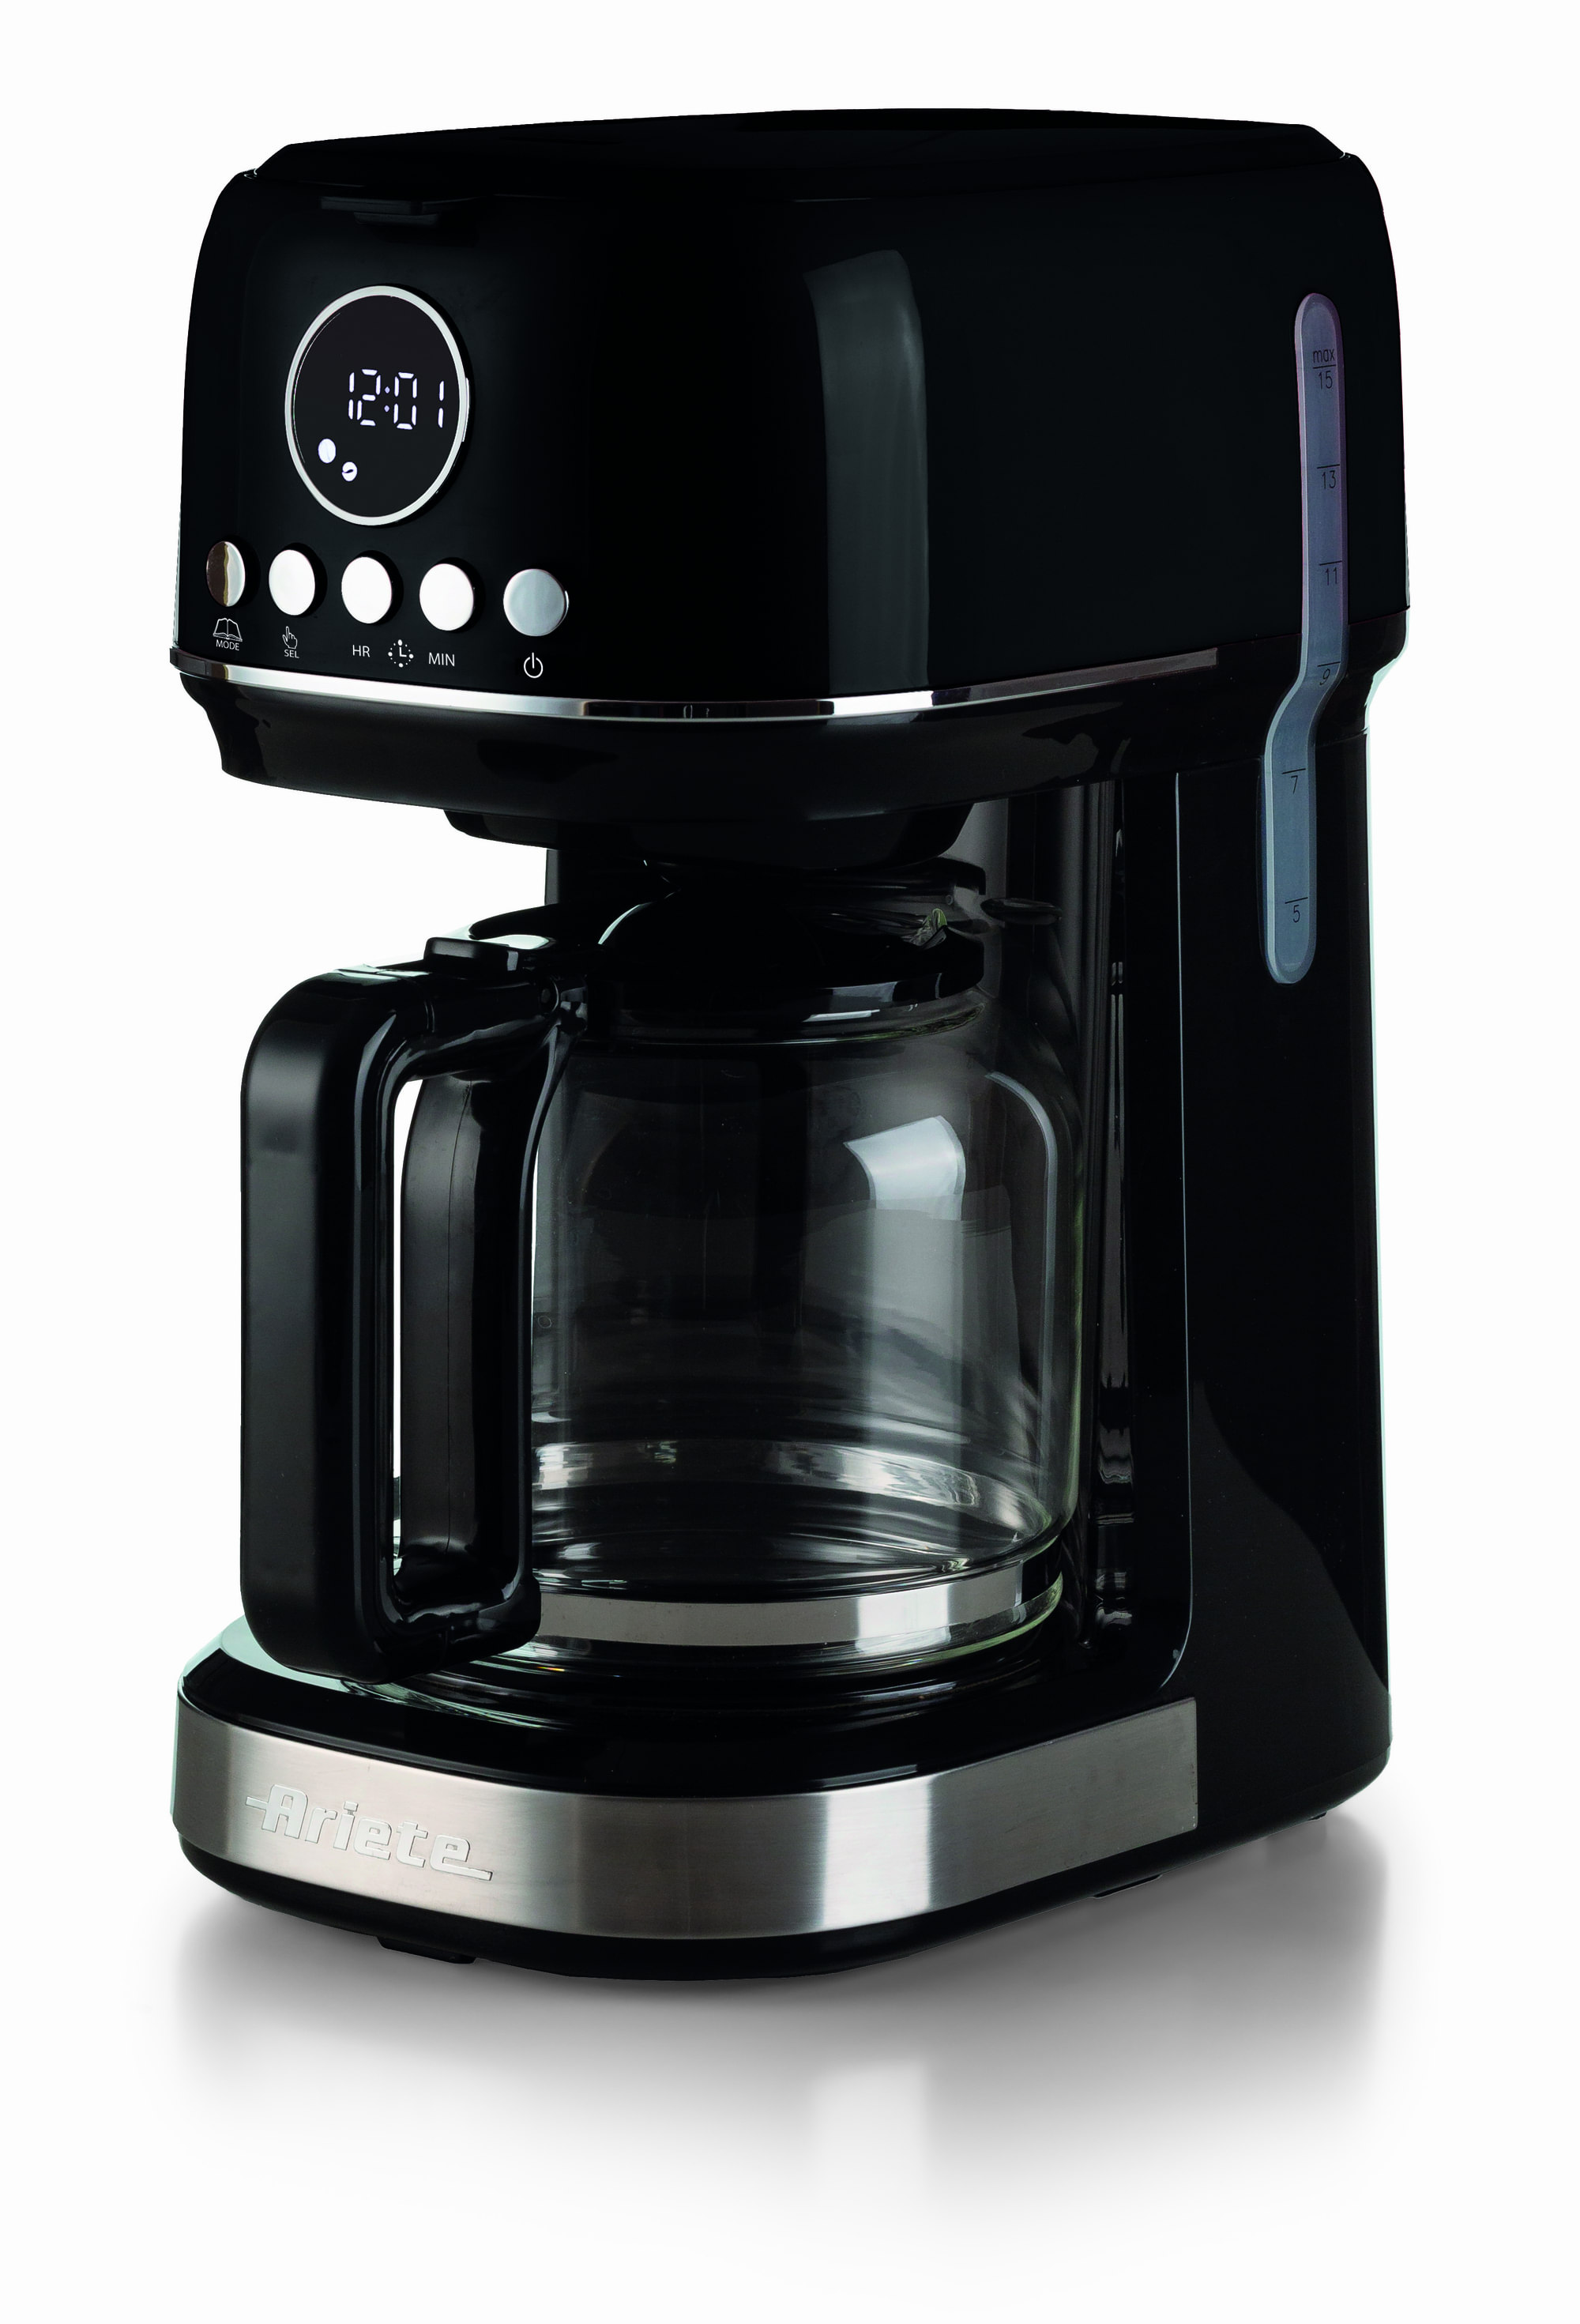 Immagine di  Ariete 1396 Macchina da caffè con filtro Moderna, Caffè americano, Capacità fino a 15 tazze, Base riscaldante, Display LCD, Filtri estraibili e lavabili, Nero